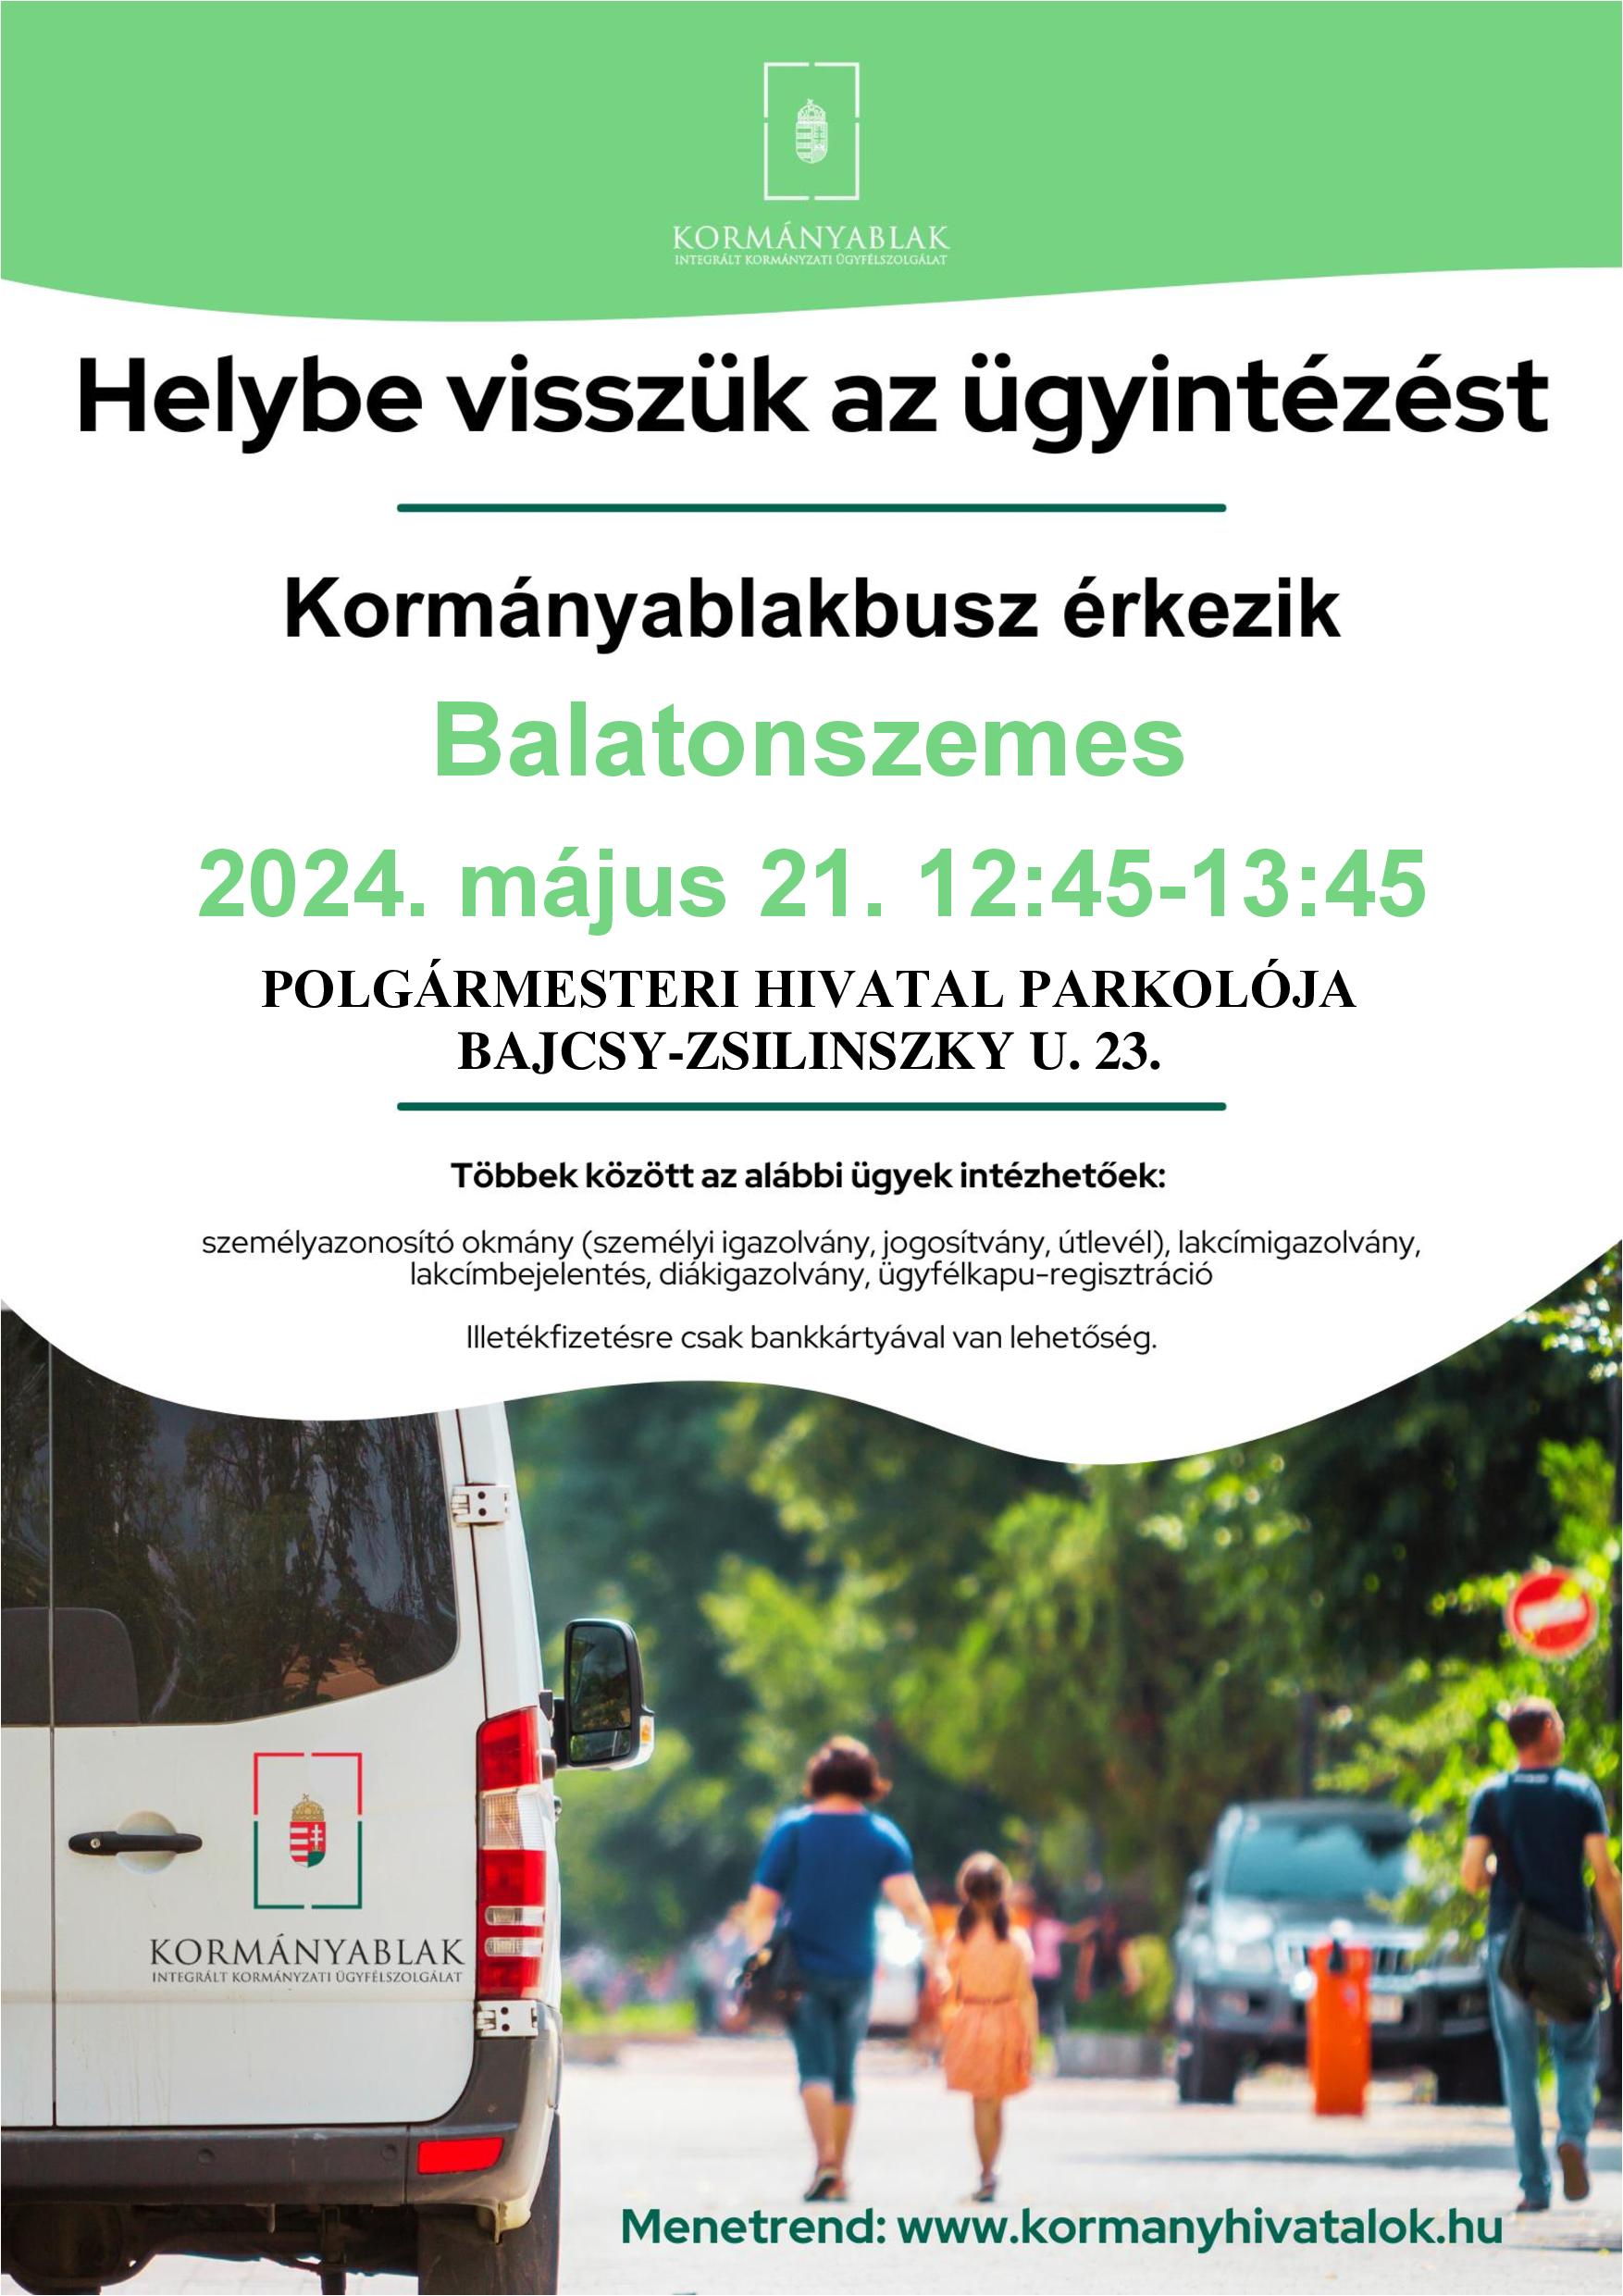 Balatonszemes Kormany Busz Plakat page 001 Kormányablak busz